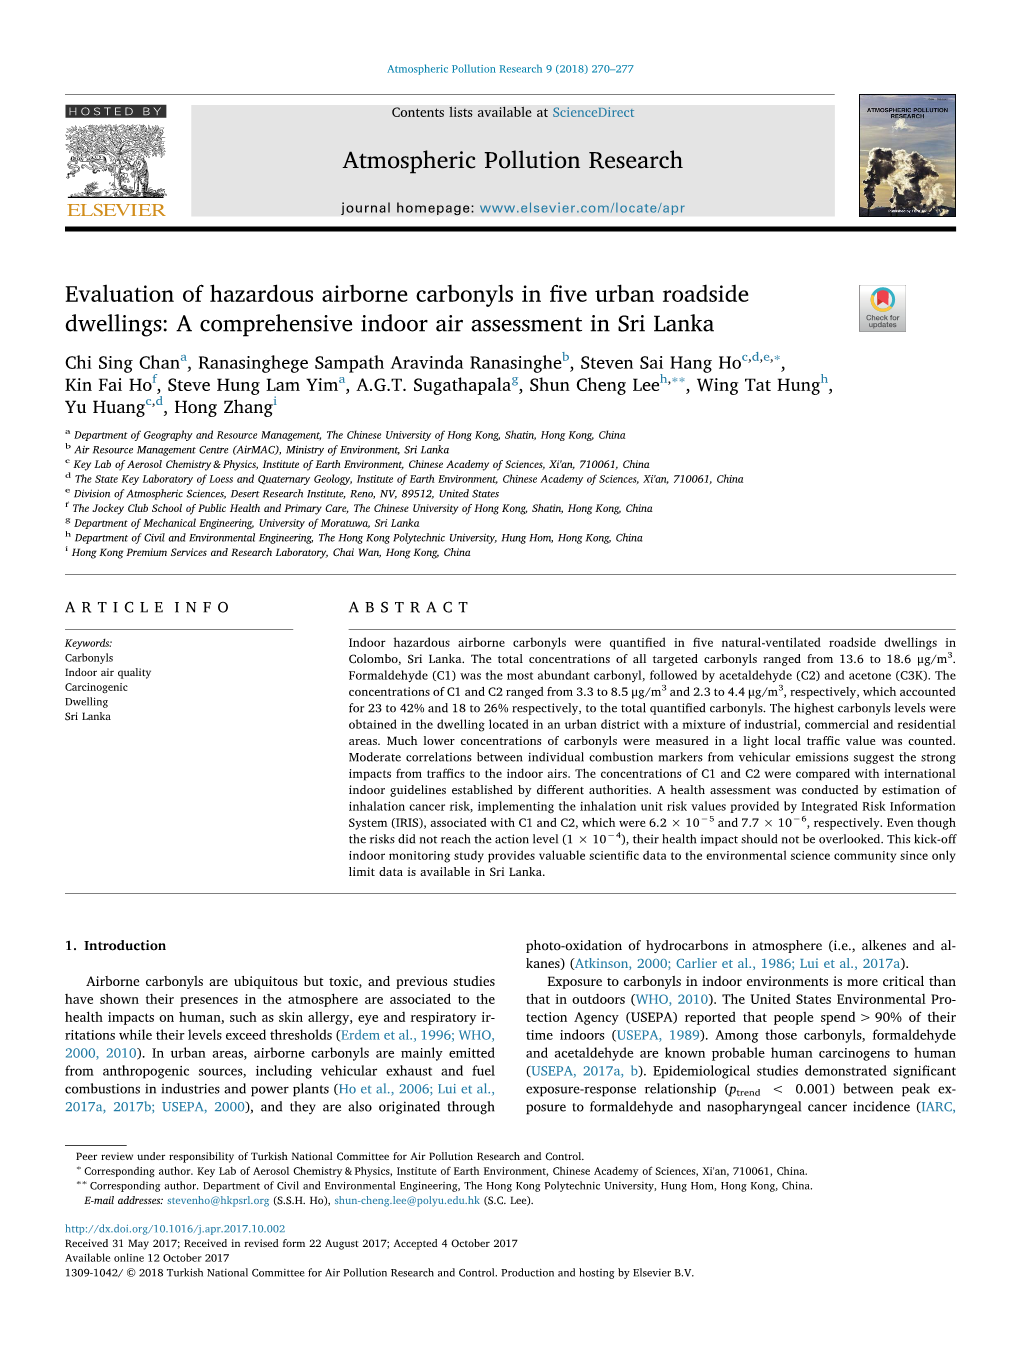 Evaluation of Hazardous Airborne Carbonyls in Fi